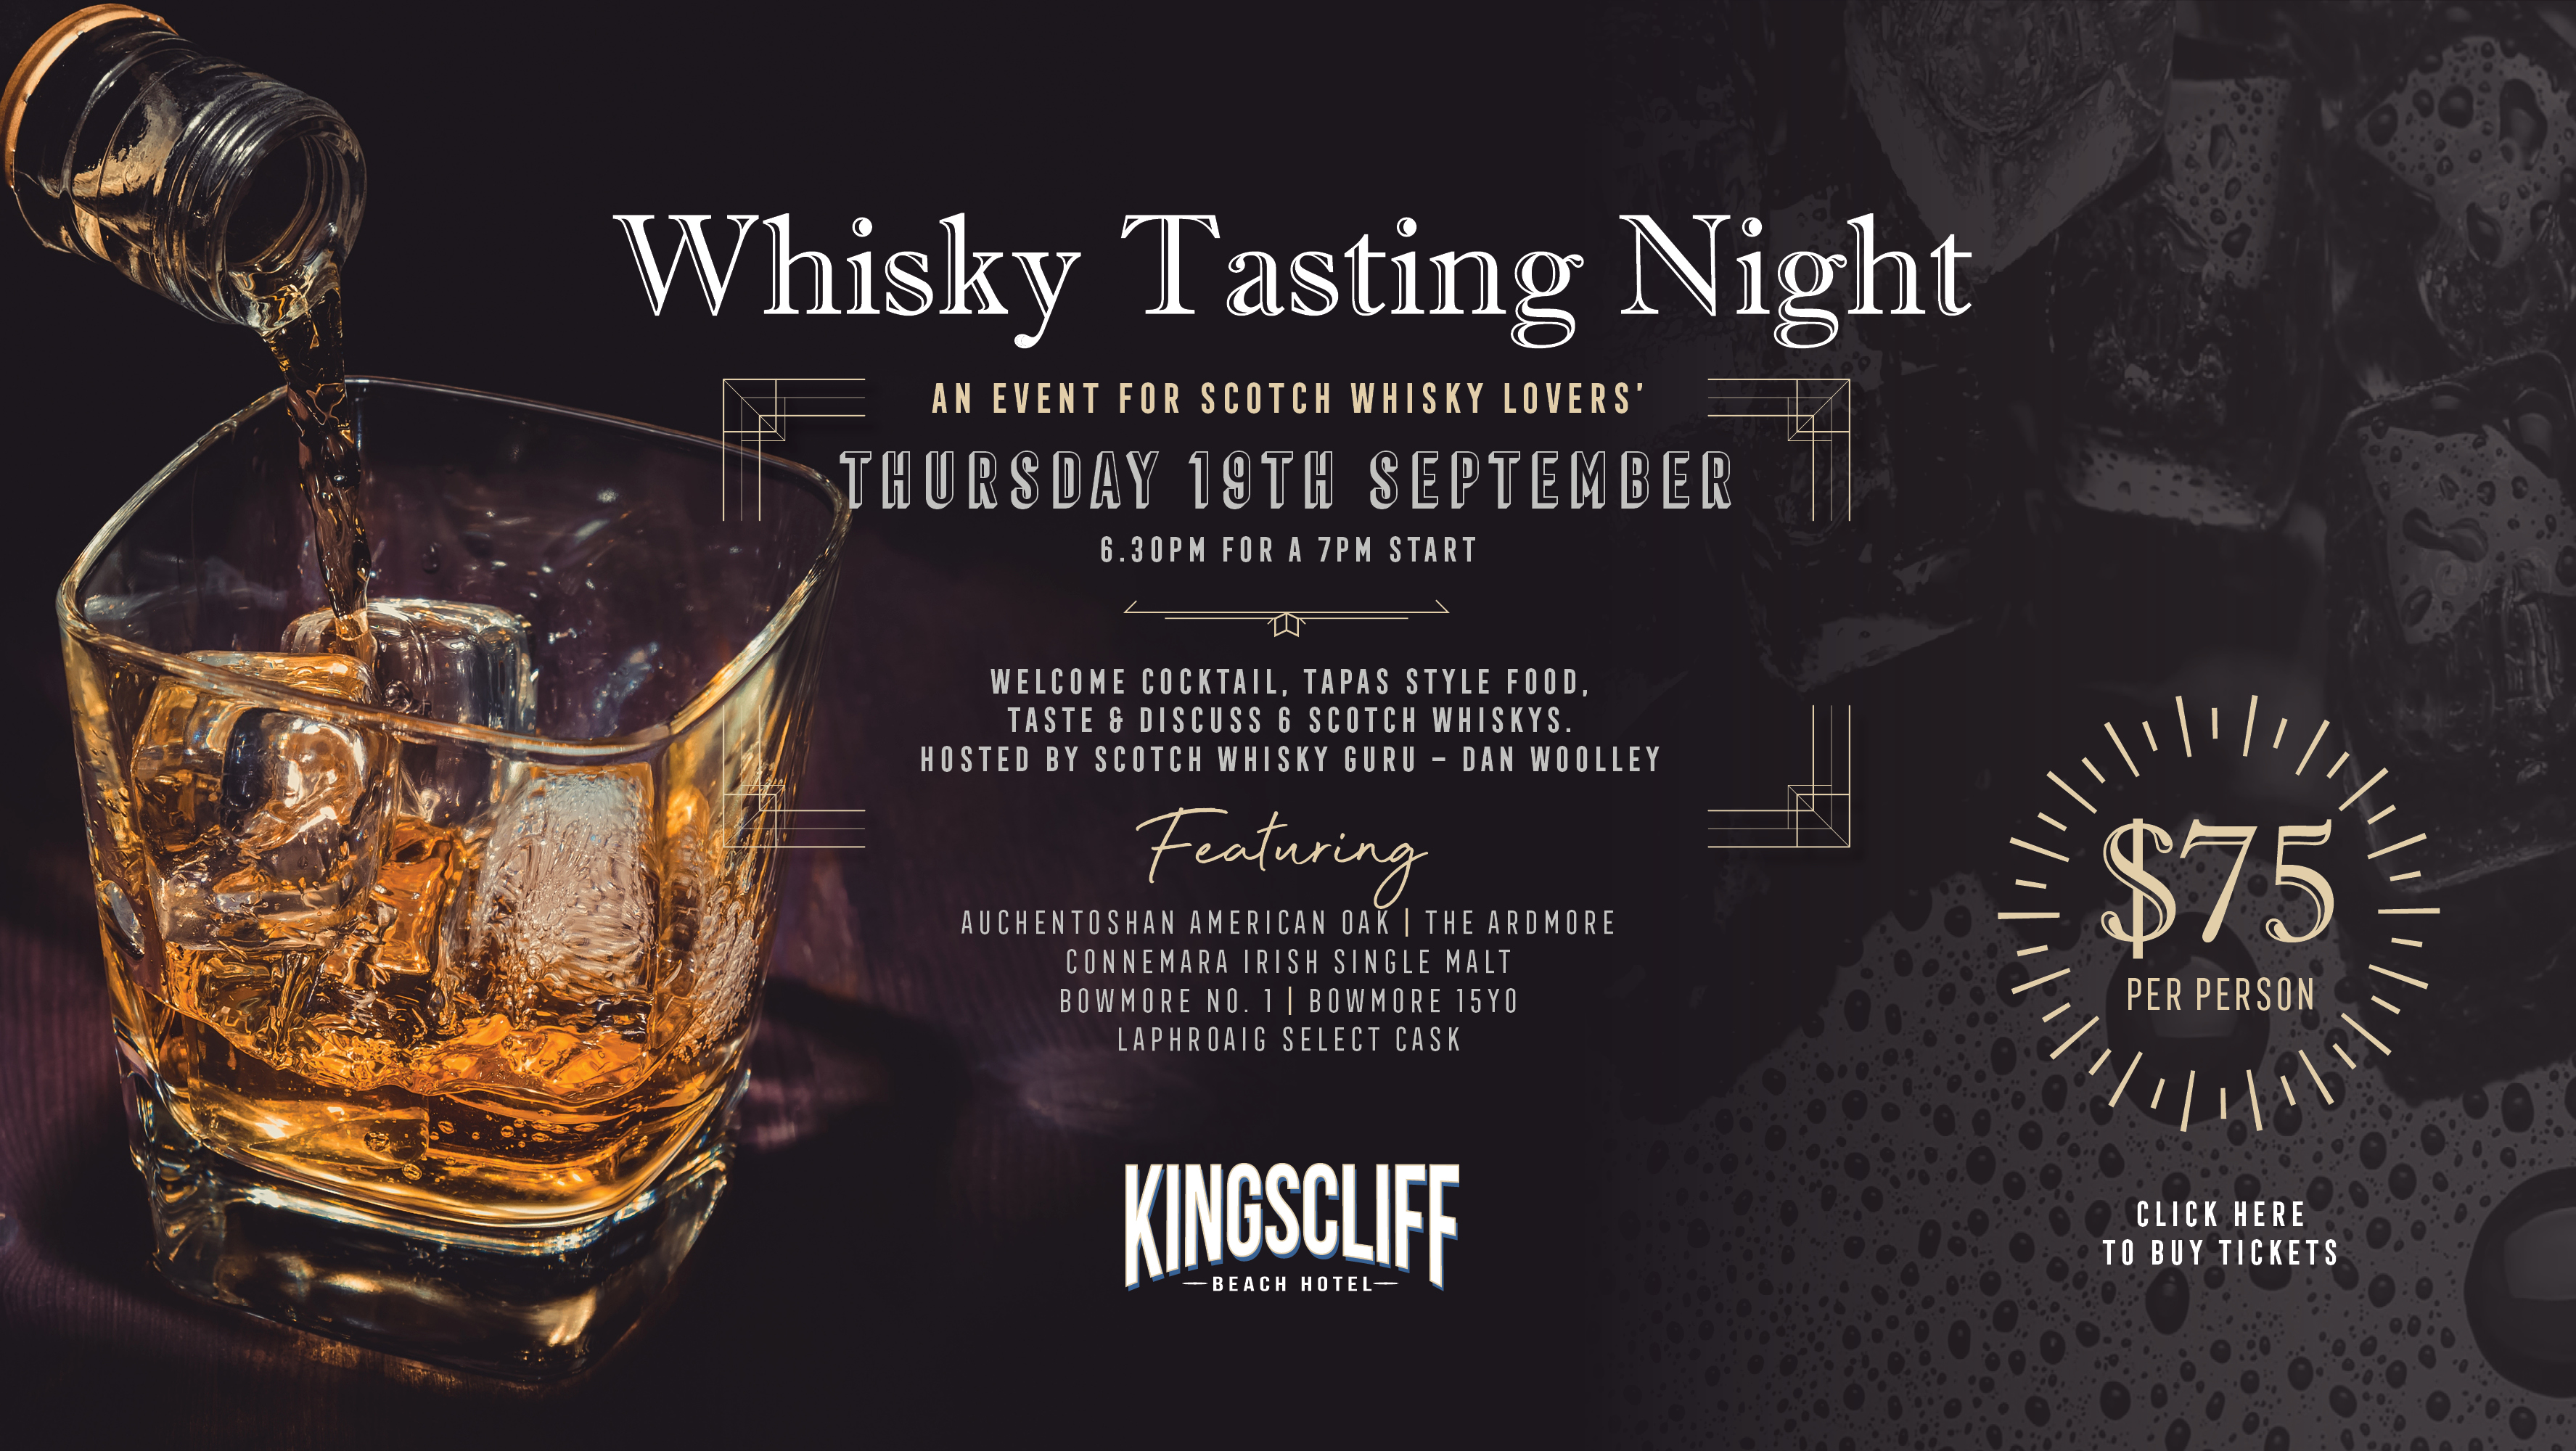 Whisky Tasting Night Kingscliff Beach Hotel.